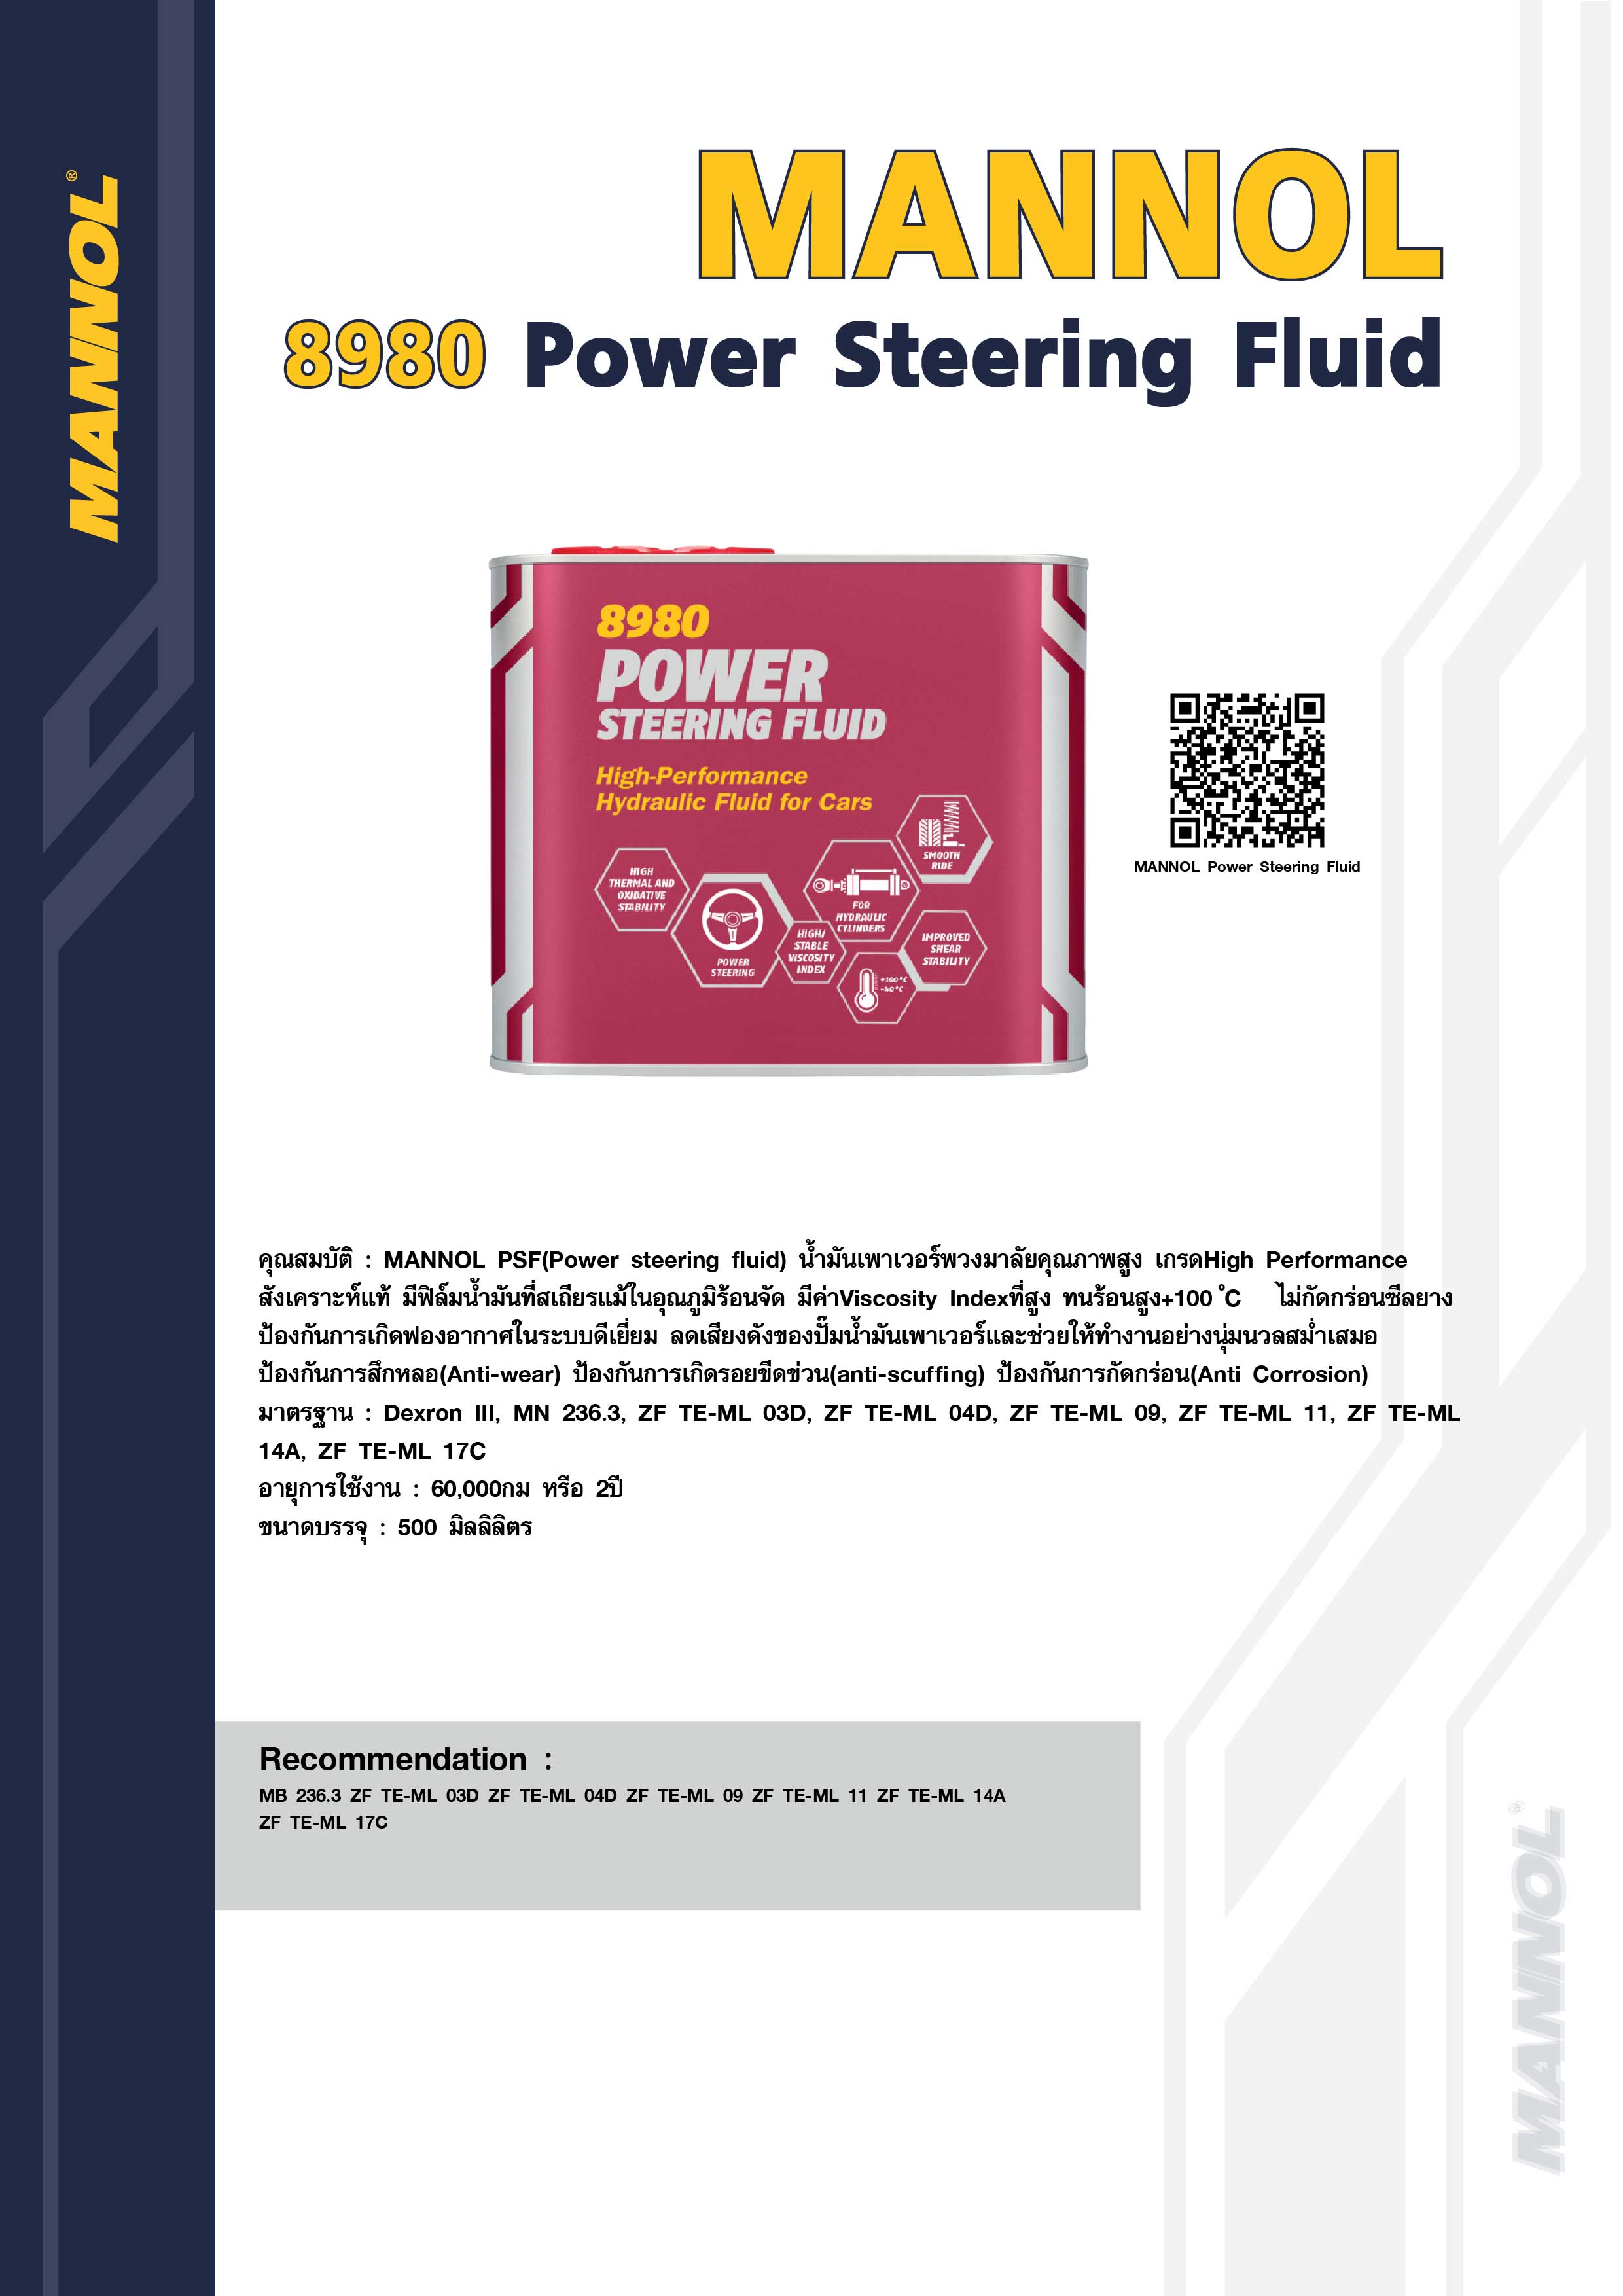 MANNOL Power Steering Fluid 8980